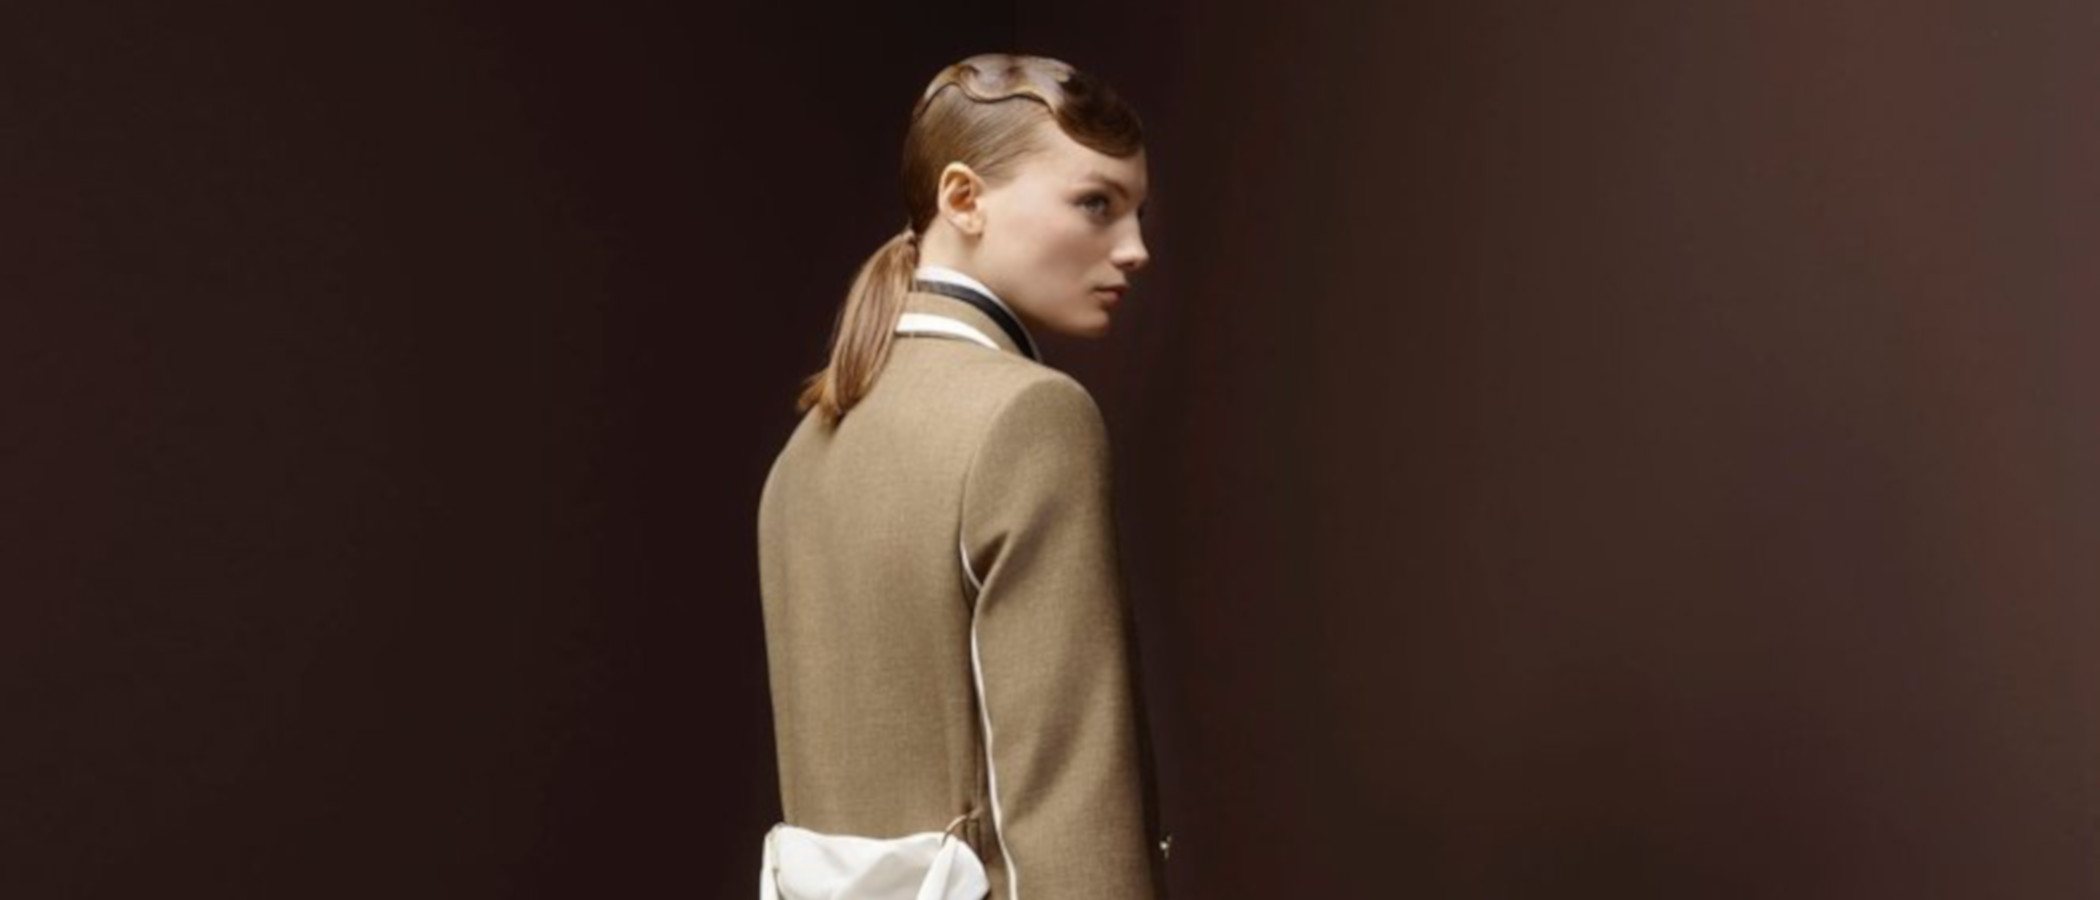 Fendi presenta su colección otoño/invierno 19/20, la última diseñada por Karl Lagerfeld